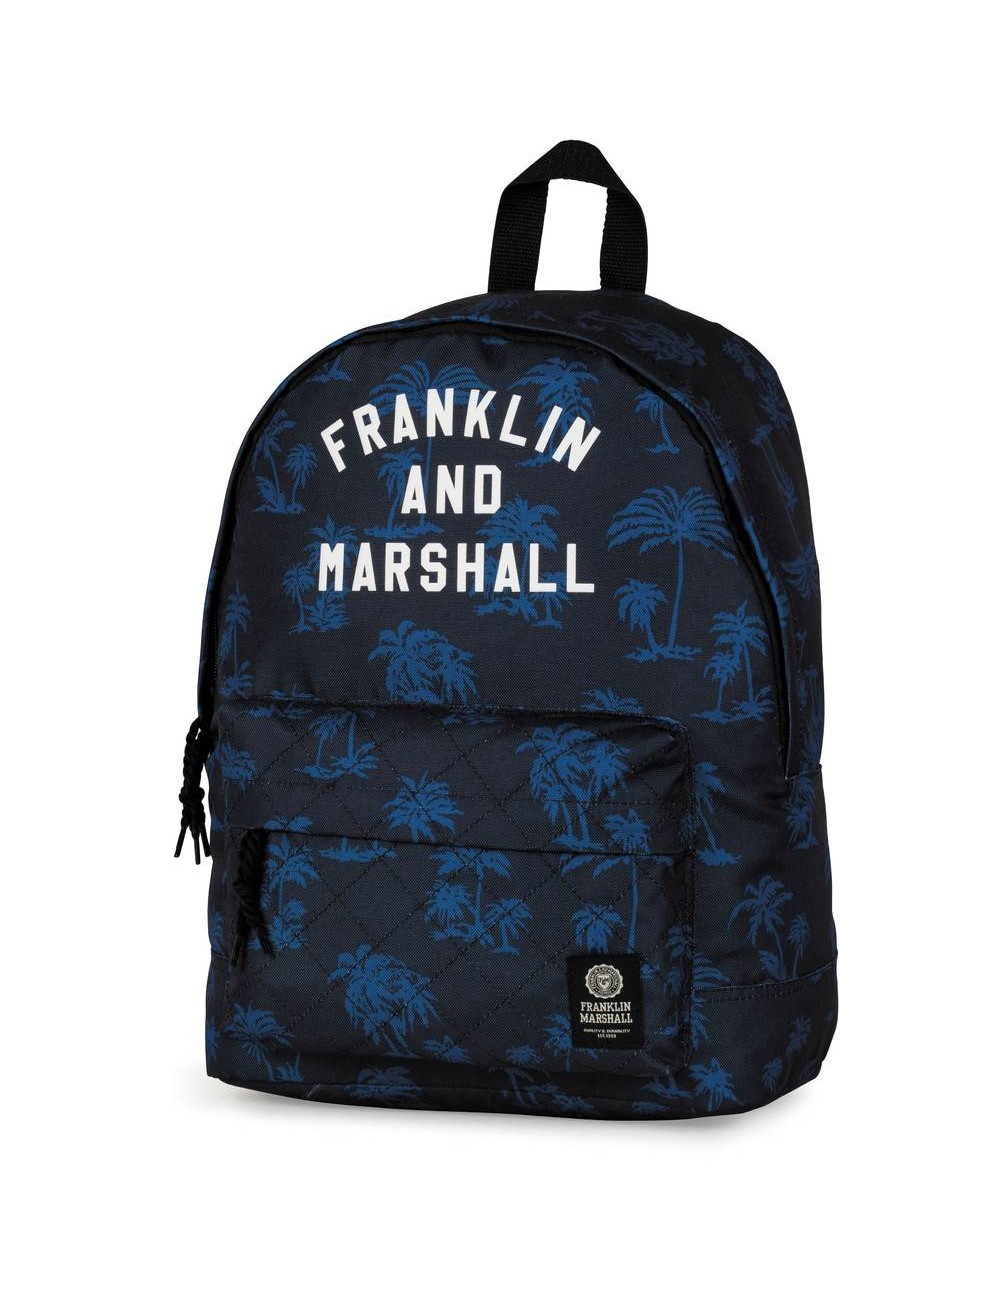 Rucsac Franklin & Marshall tiparit în albastru